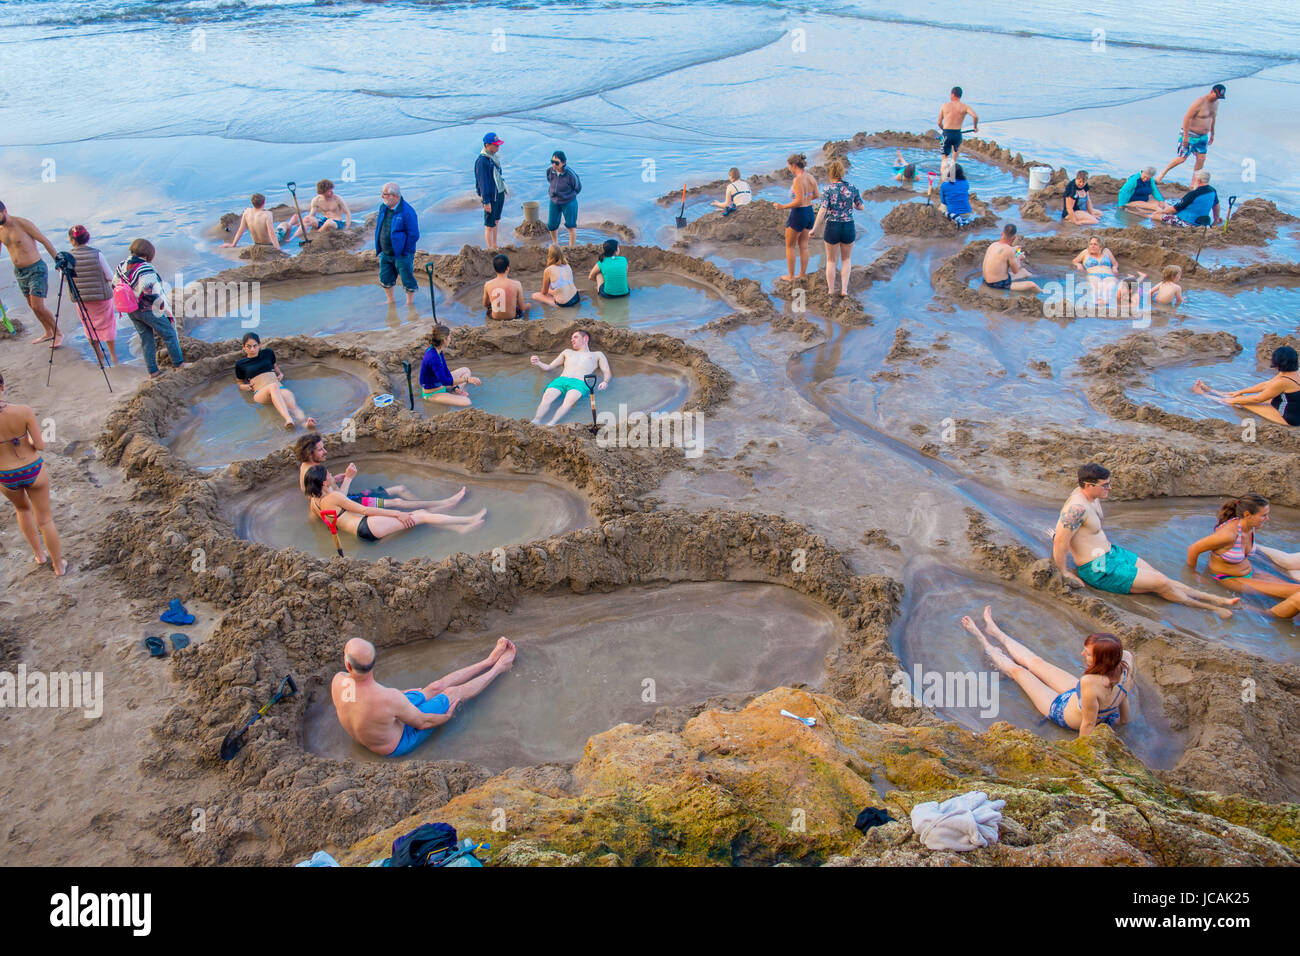 L'ÎLE DU NORD, Nouvelle-zélande - 16 MAI 2017 : les visiteurs de petites piscines d'eau chaude dans l'eau chaude.L'un des plus populaires attractions de la géothermie Banque D'Images